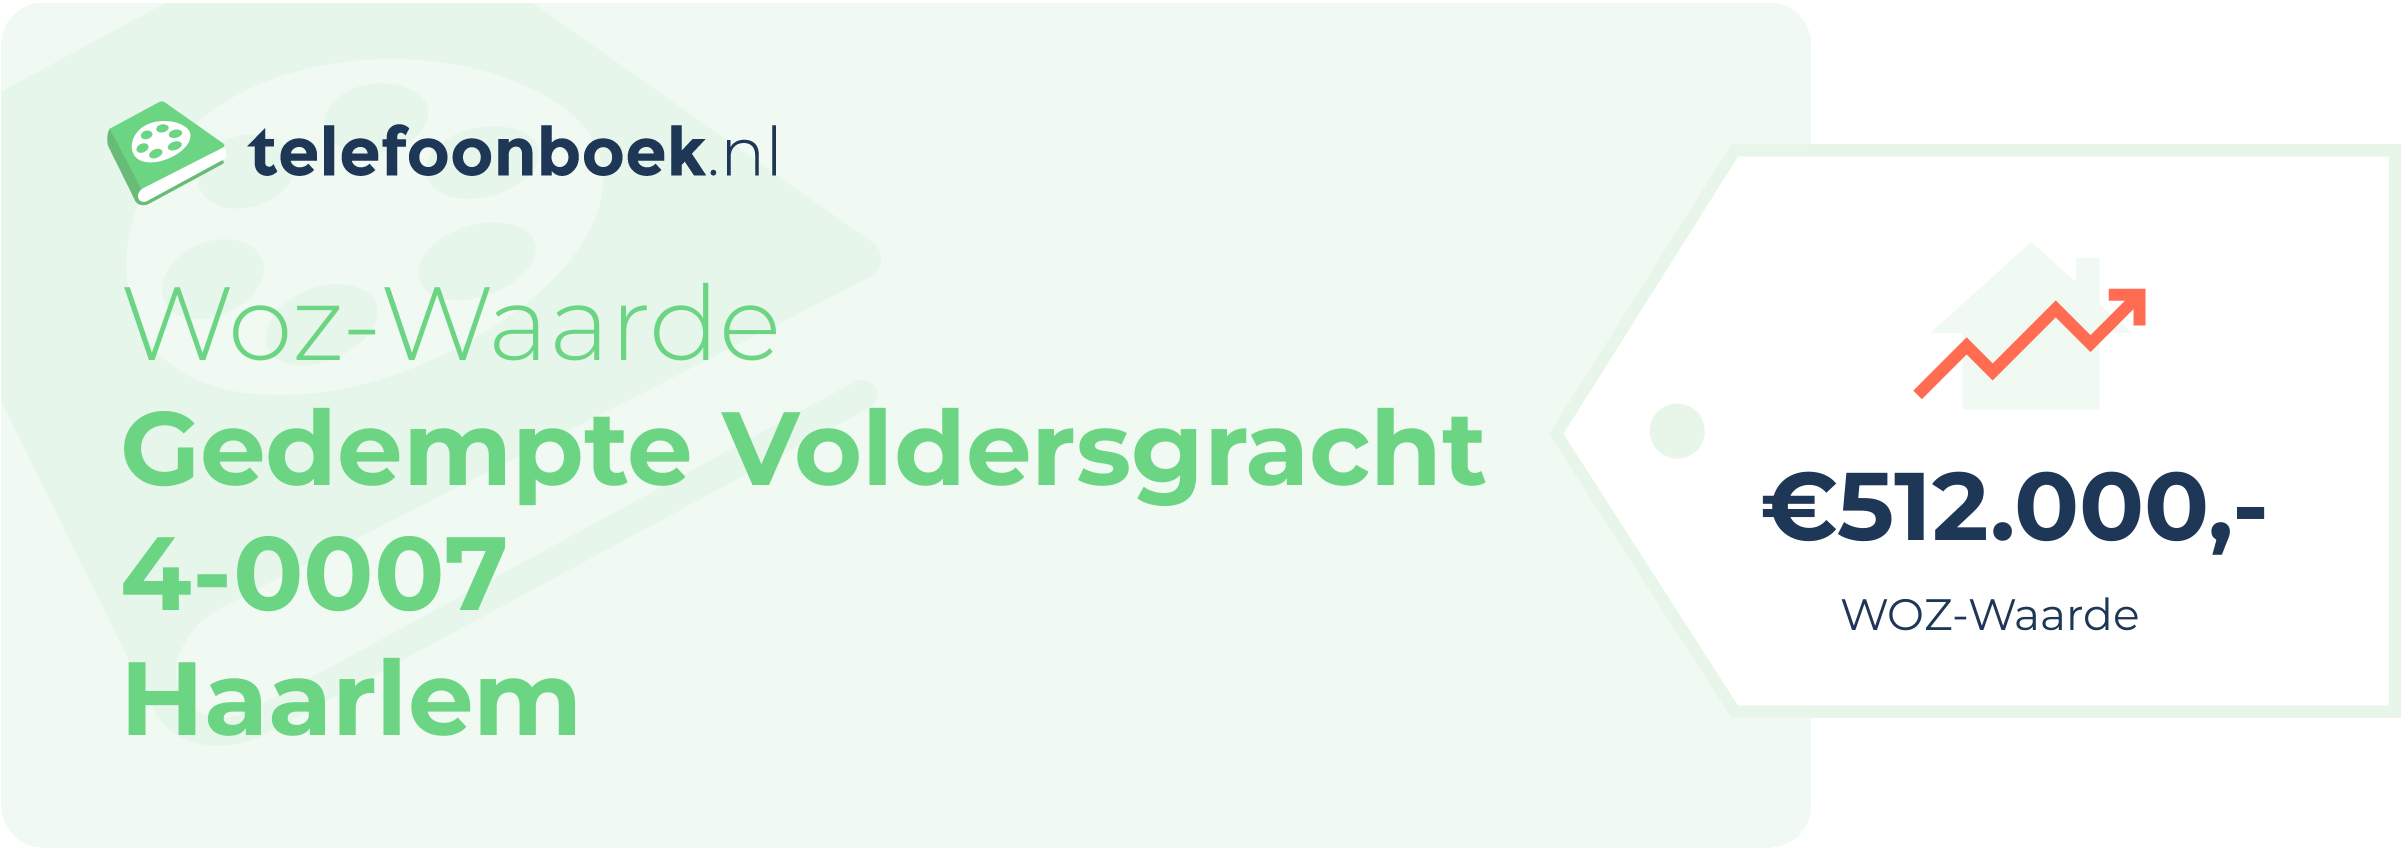 WOZ-waarde Gedempte Voldersgracht 4-0007 Haarlem